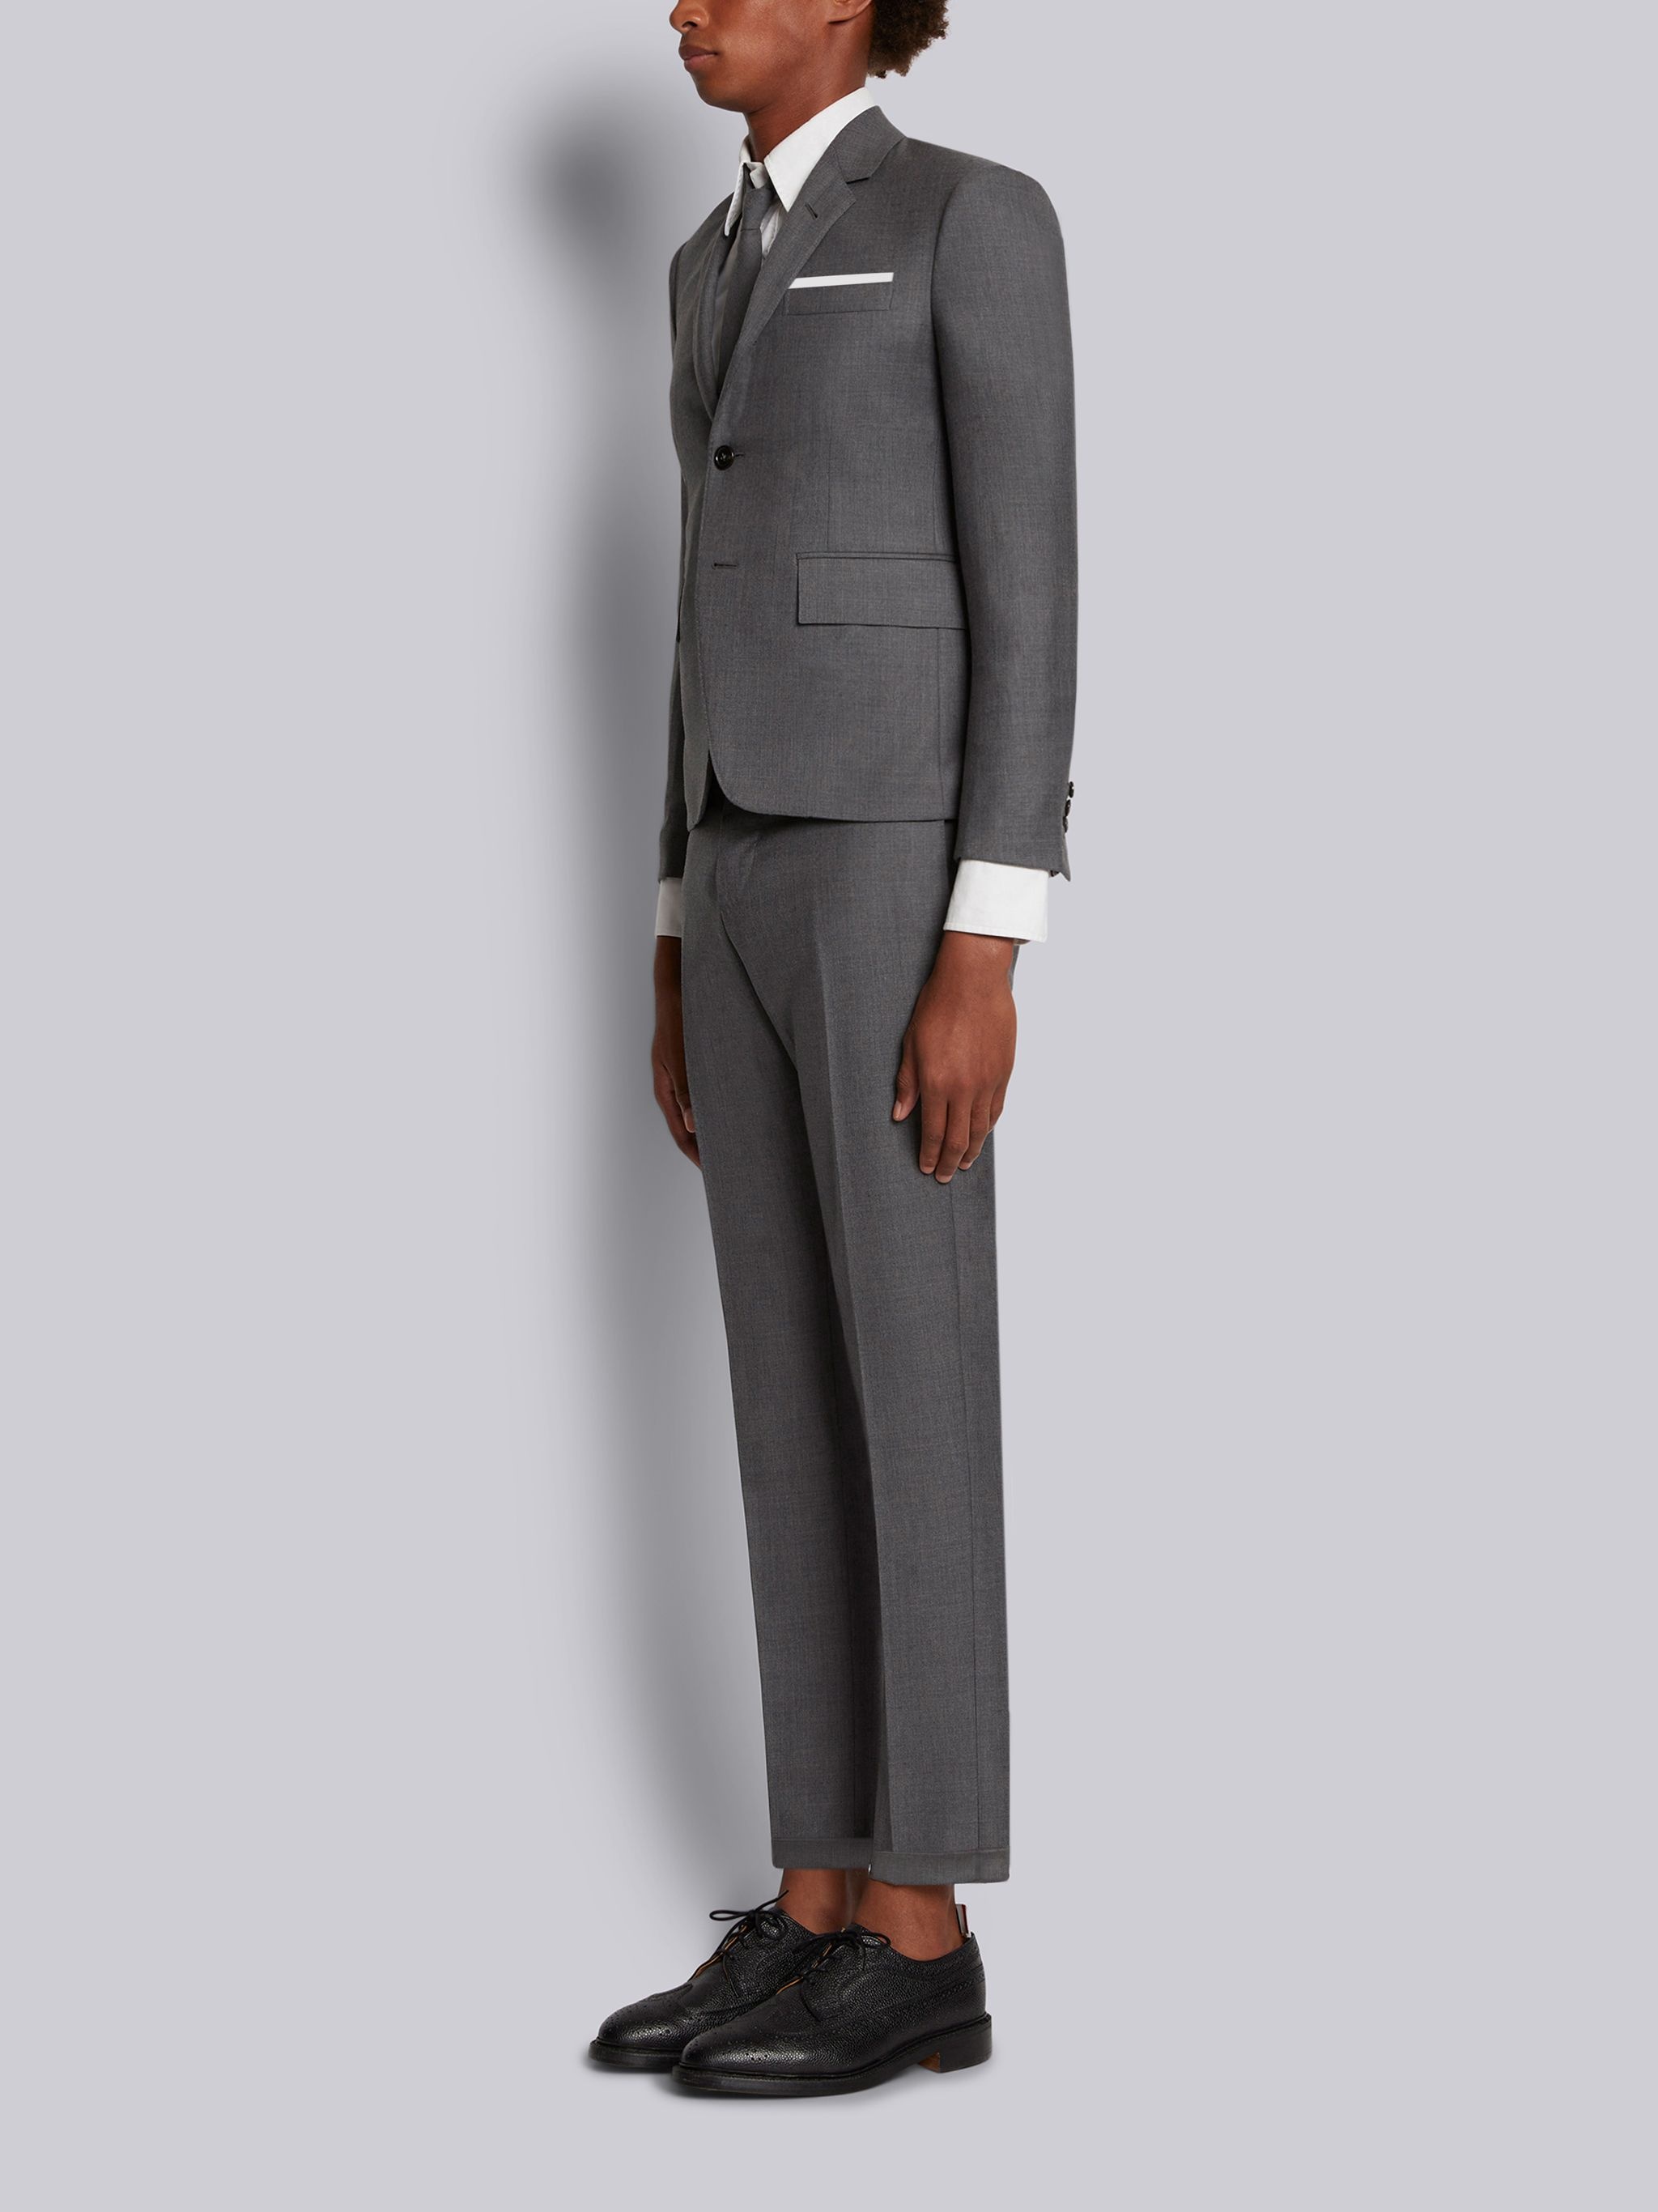 Shop Men's Designer Suits: Browse luxury men's suits | REVERSIBLE